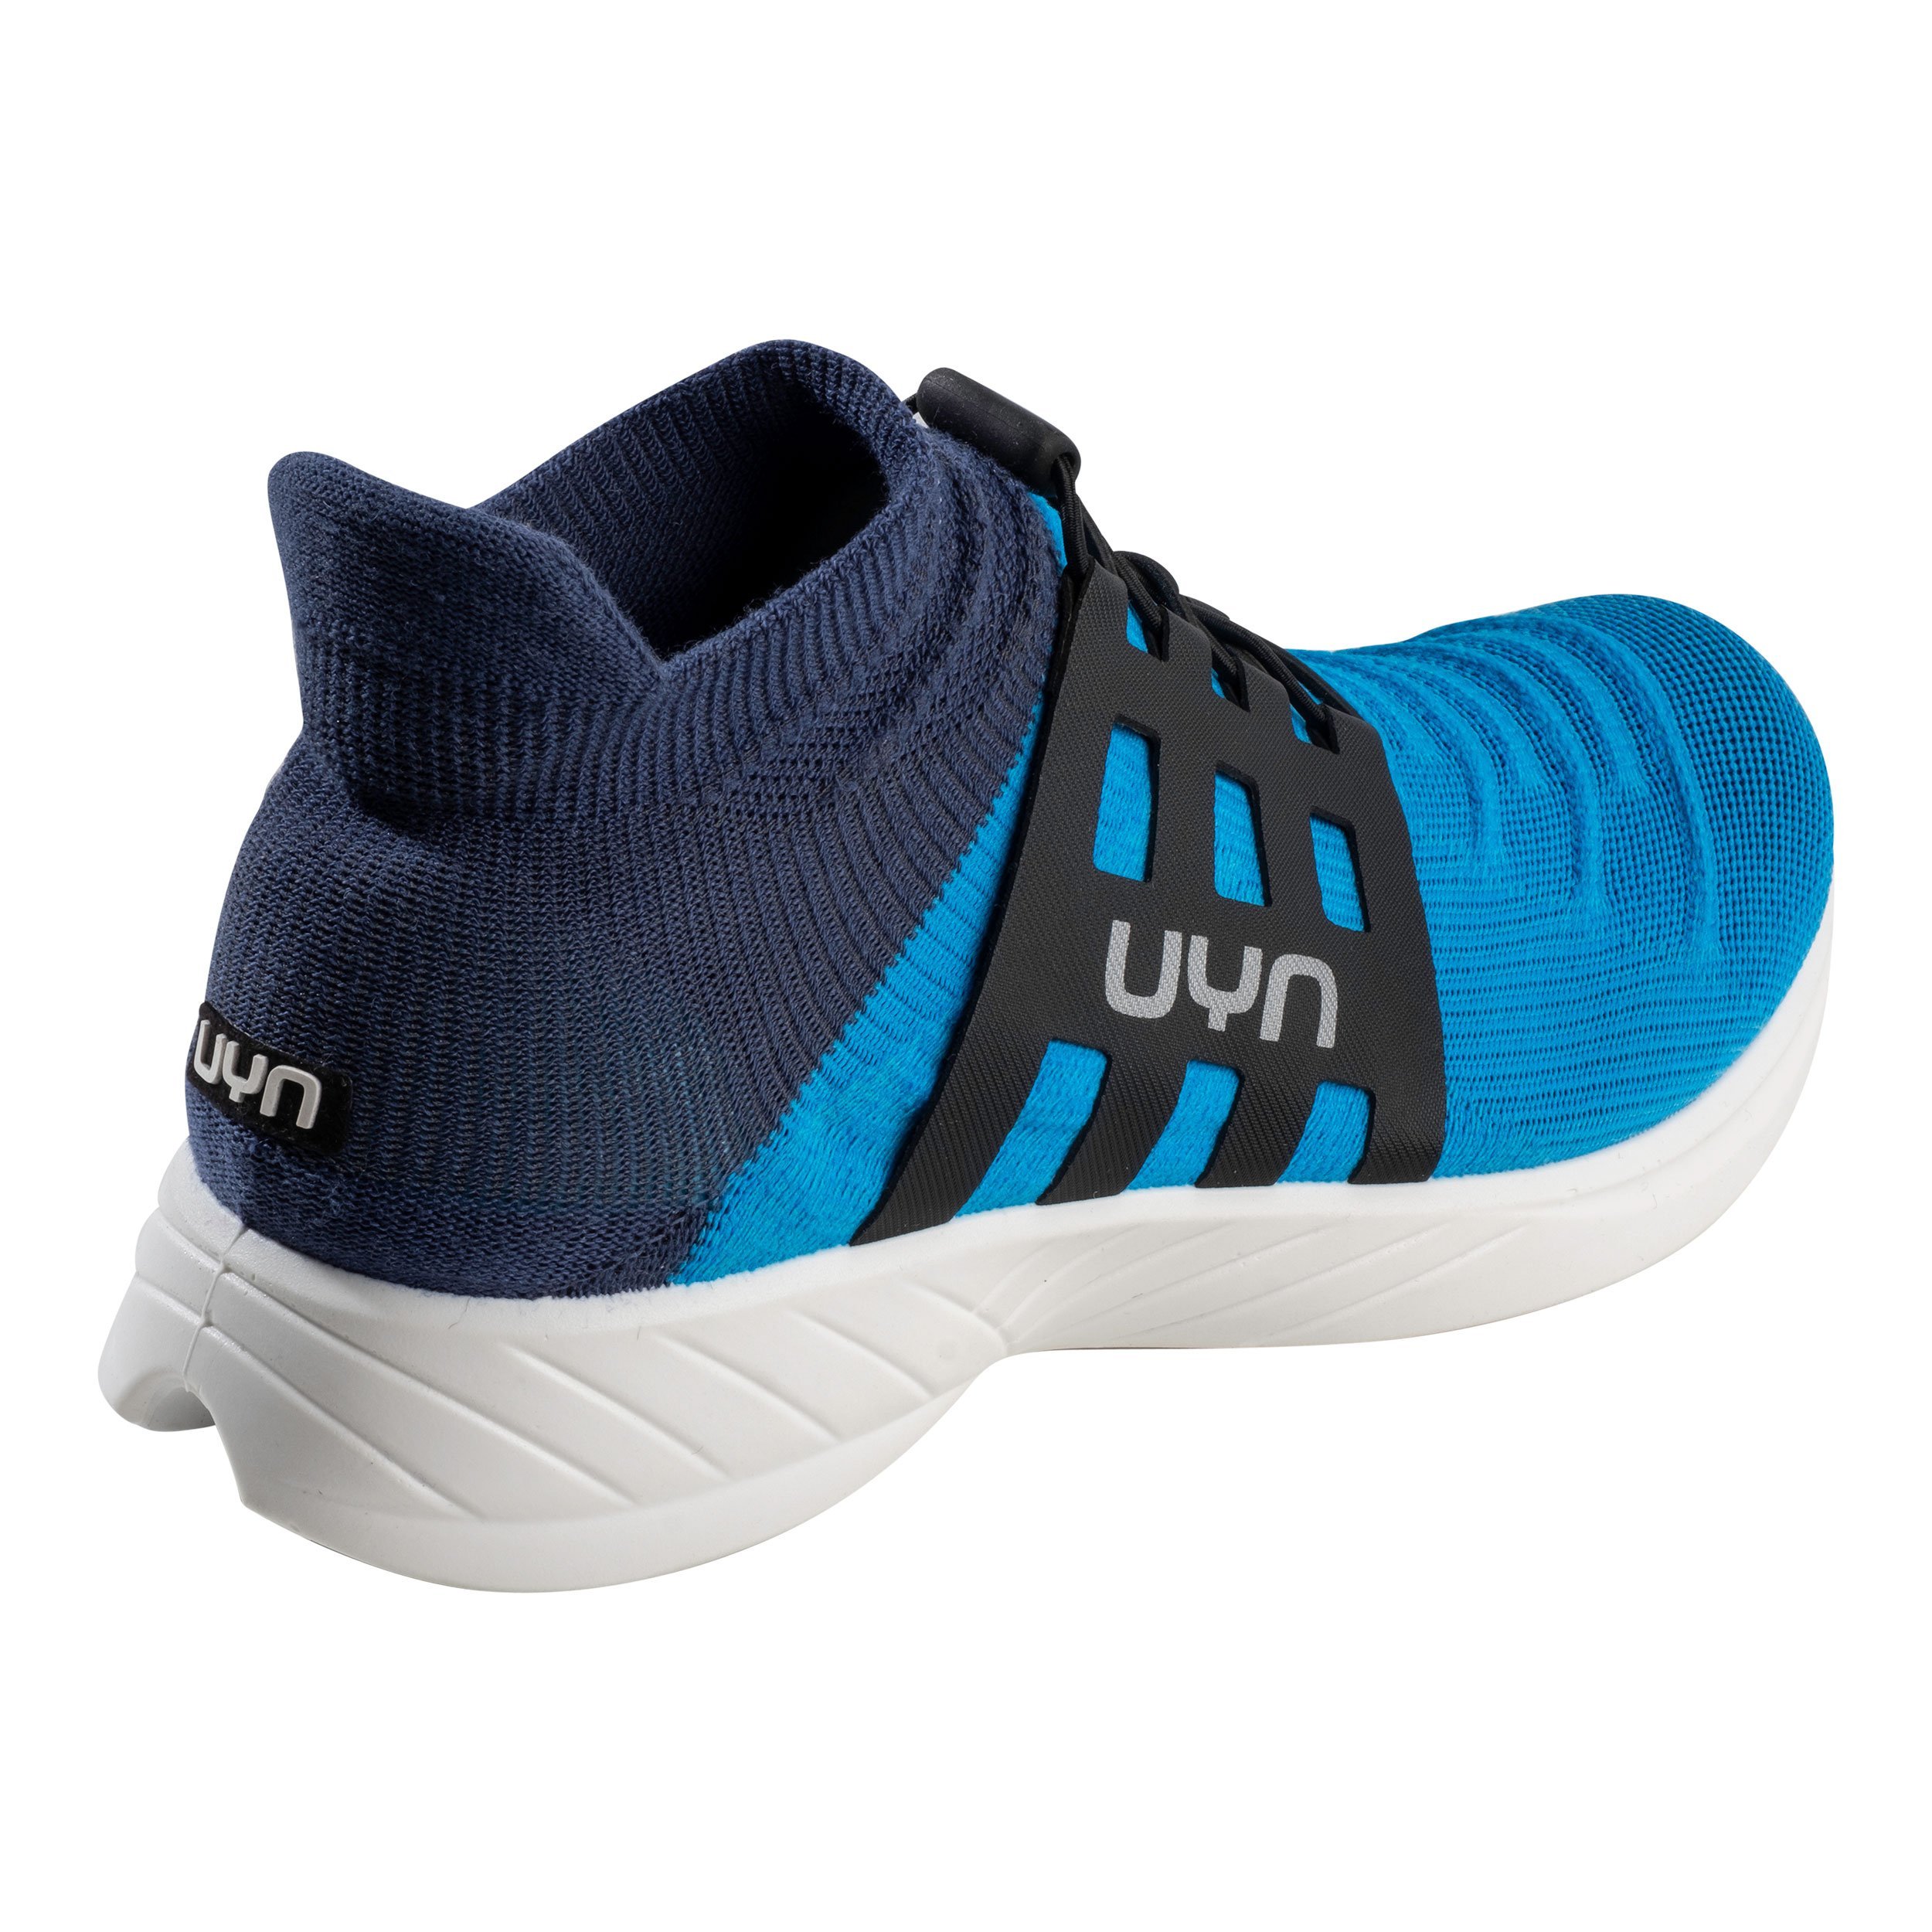 Topánky UYN X-Cross Tune M - modrá